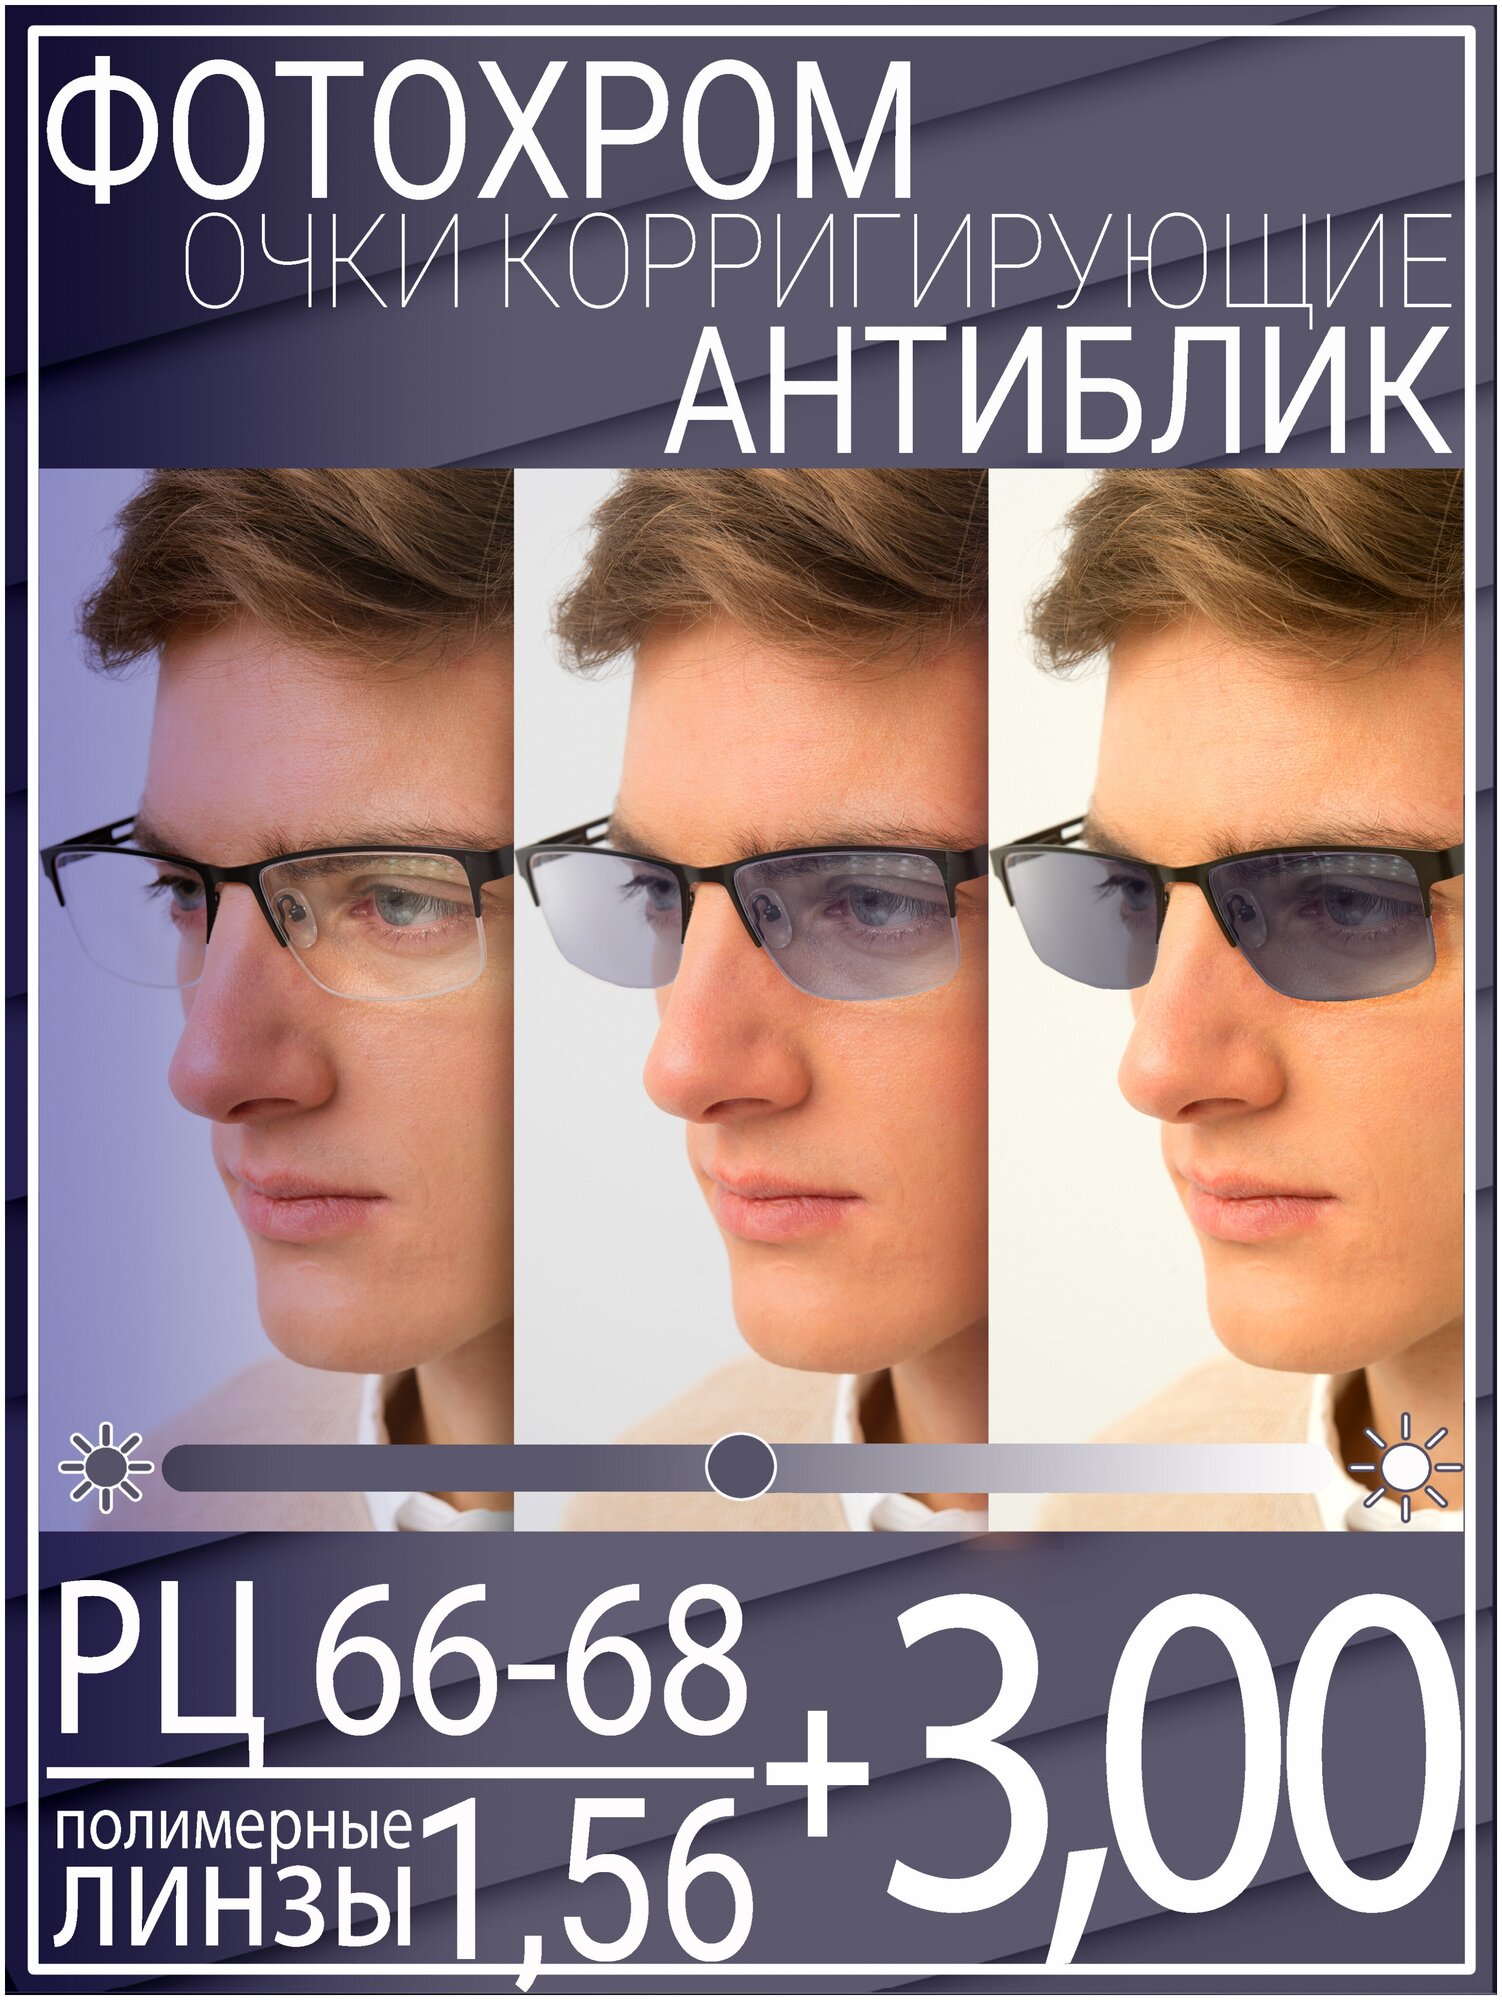 Готовые очки для зрения с фотохромной линзой +3.0 РЦ 66-68 / Очки корригирующие мужские